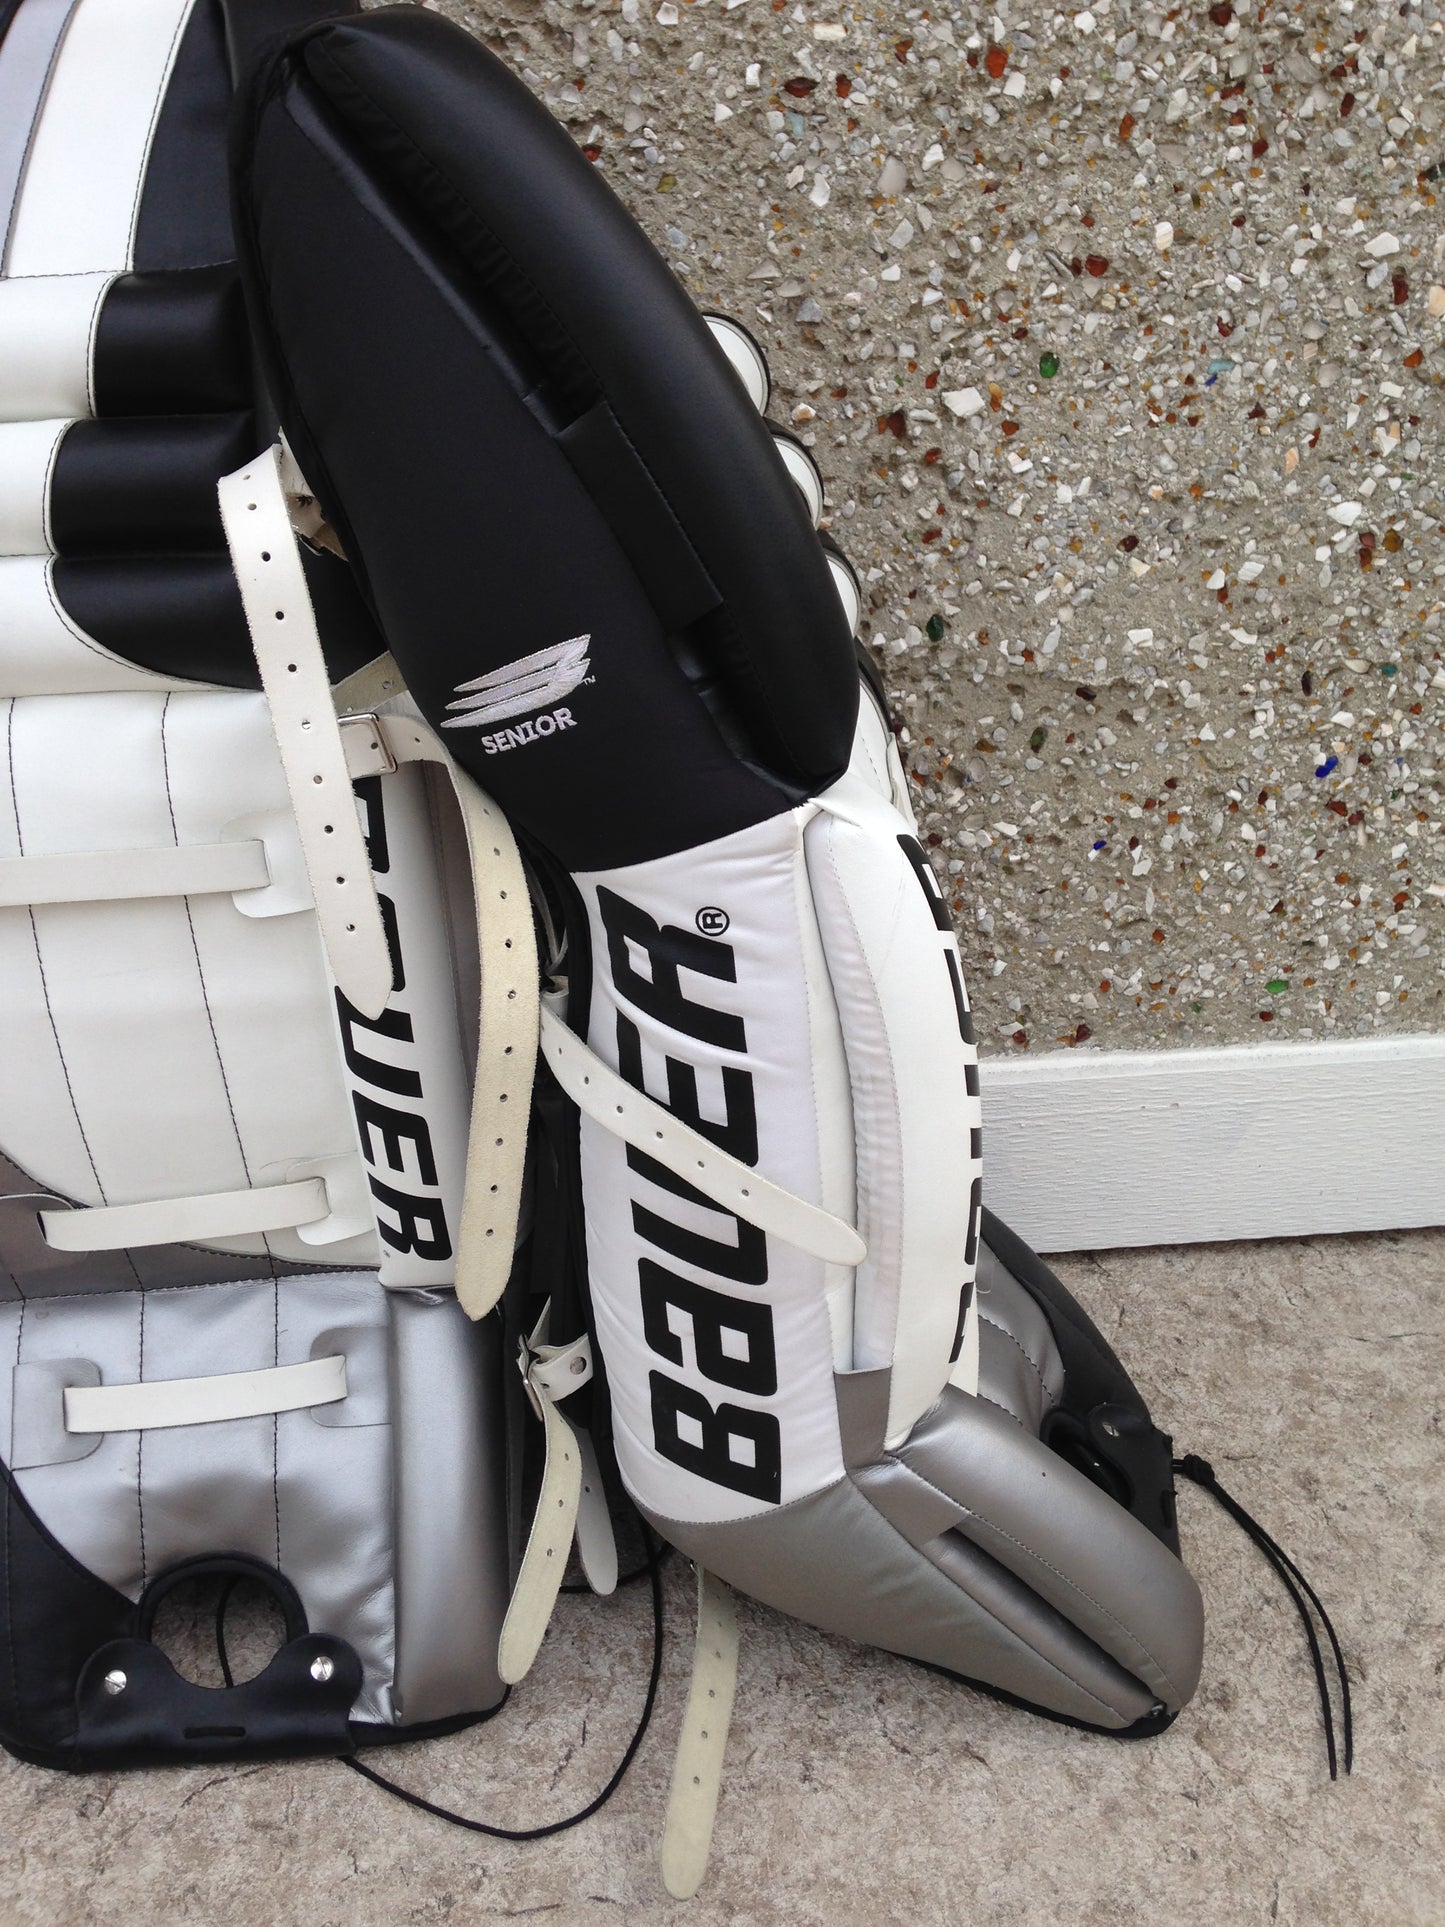 Hockey Goalie Shin Pads Men's 34 inch Bauer Black White New Demo Model